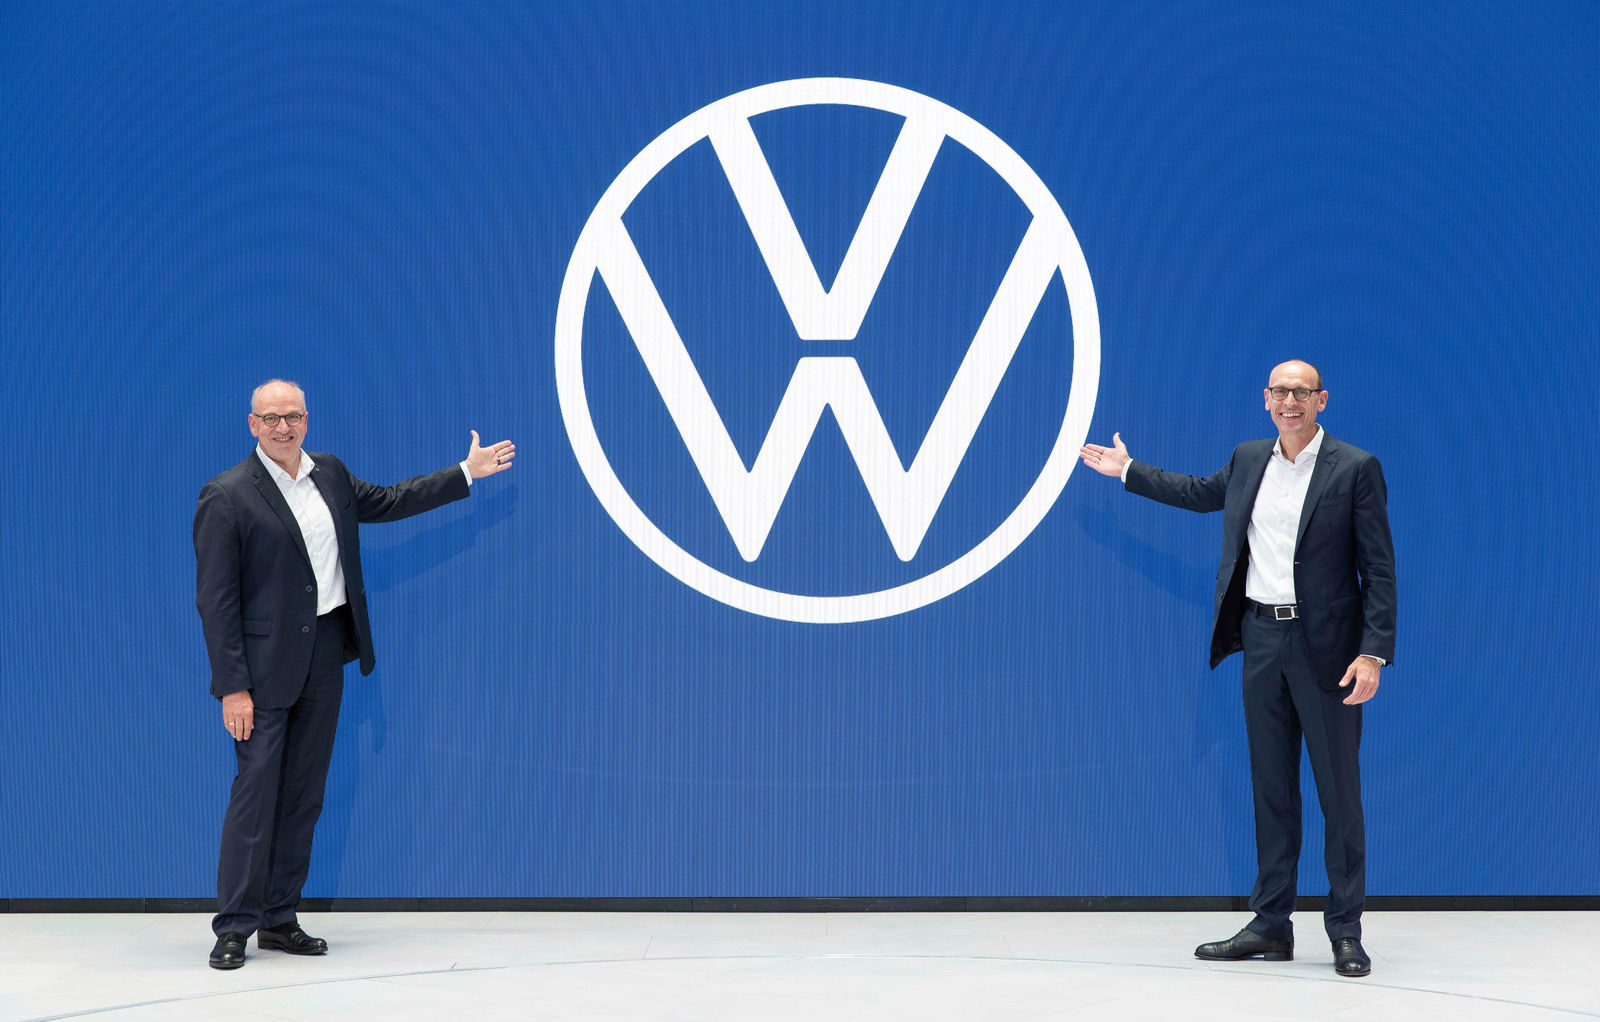 Jürgen Stackmann, Mitglied des Markenvorstands Volkswagen Pkw, Geschäftsbereiche ’Vertrieb, Marketing und After Sales’ und Ralf Brandstätter, Chief Operating Officer der Marke Volkswagen Pkw